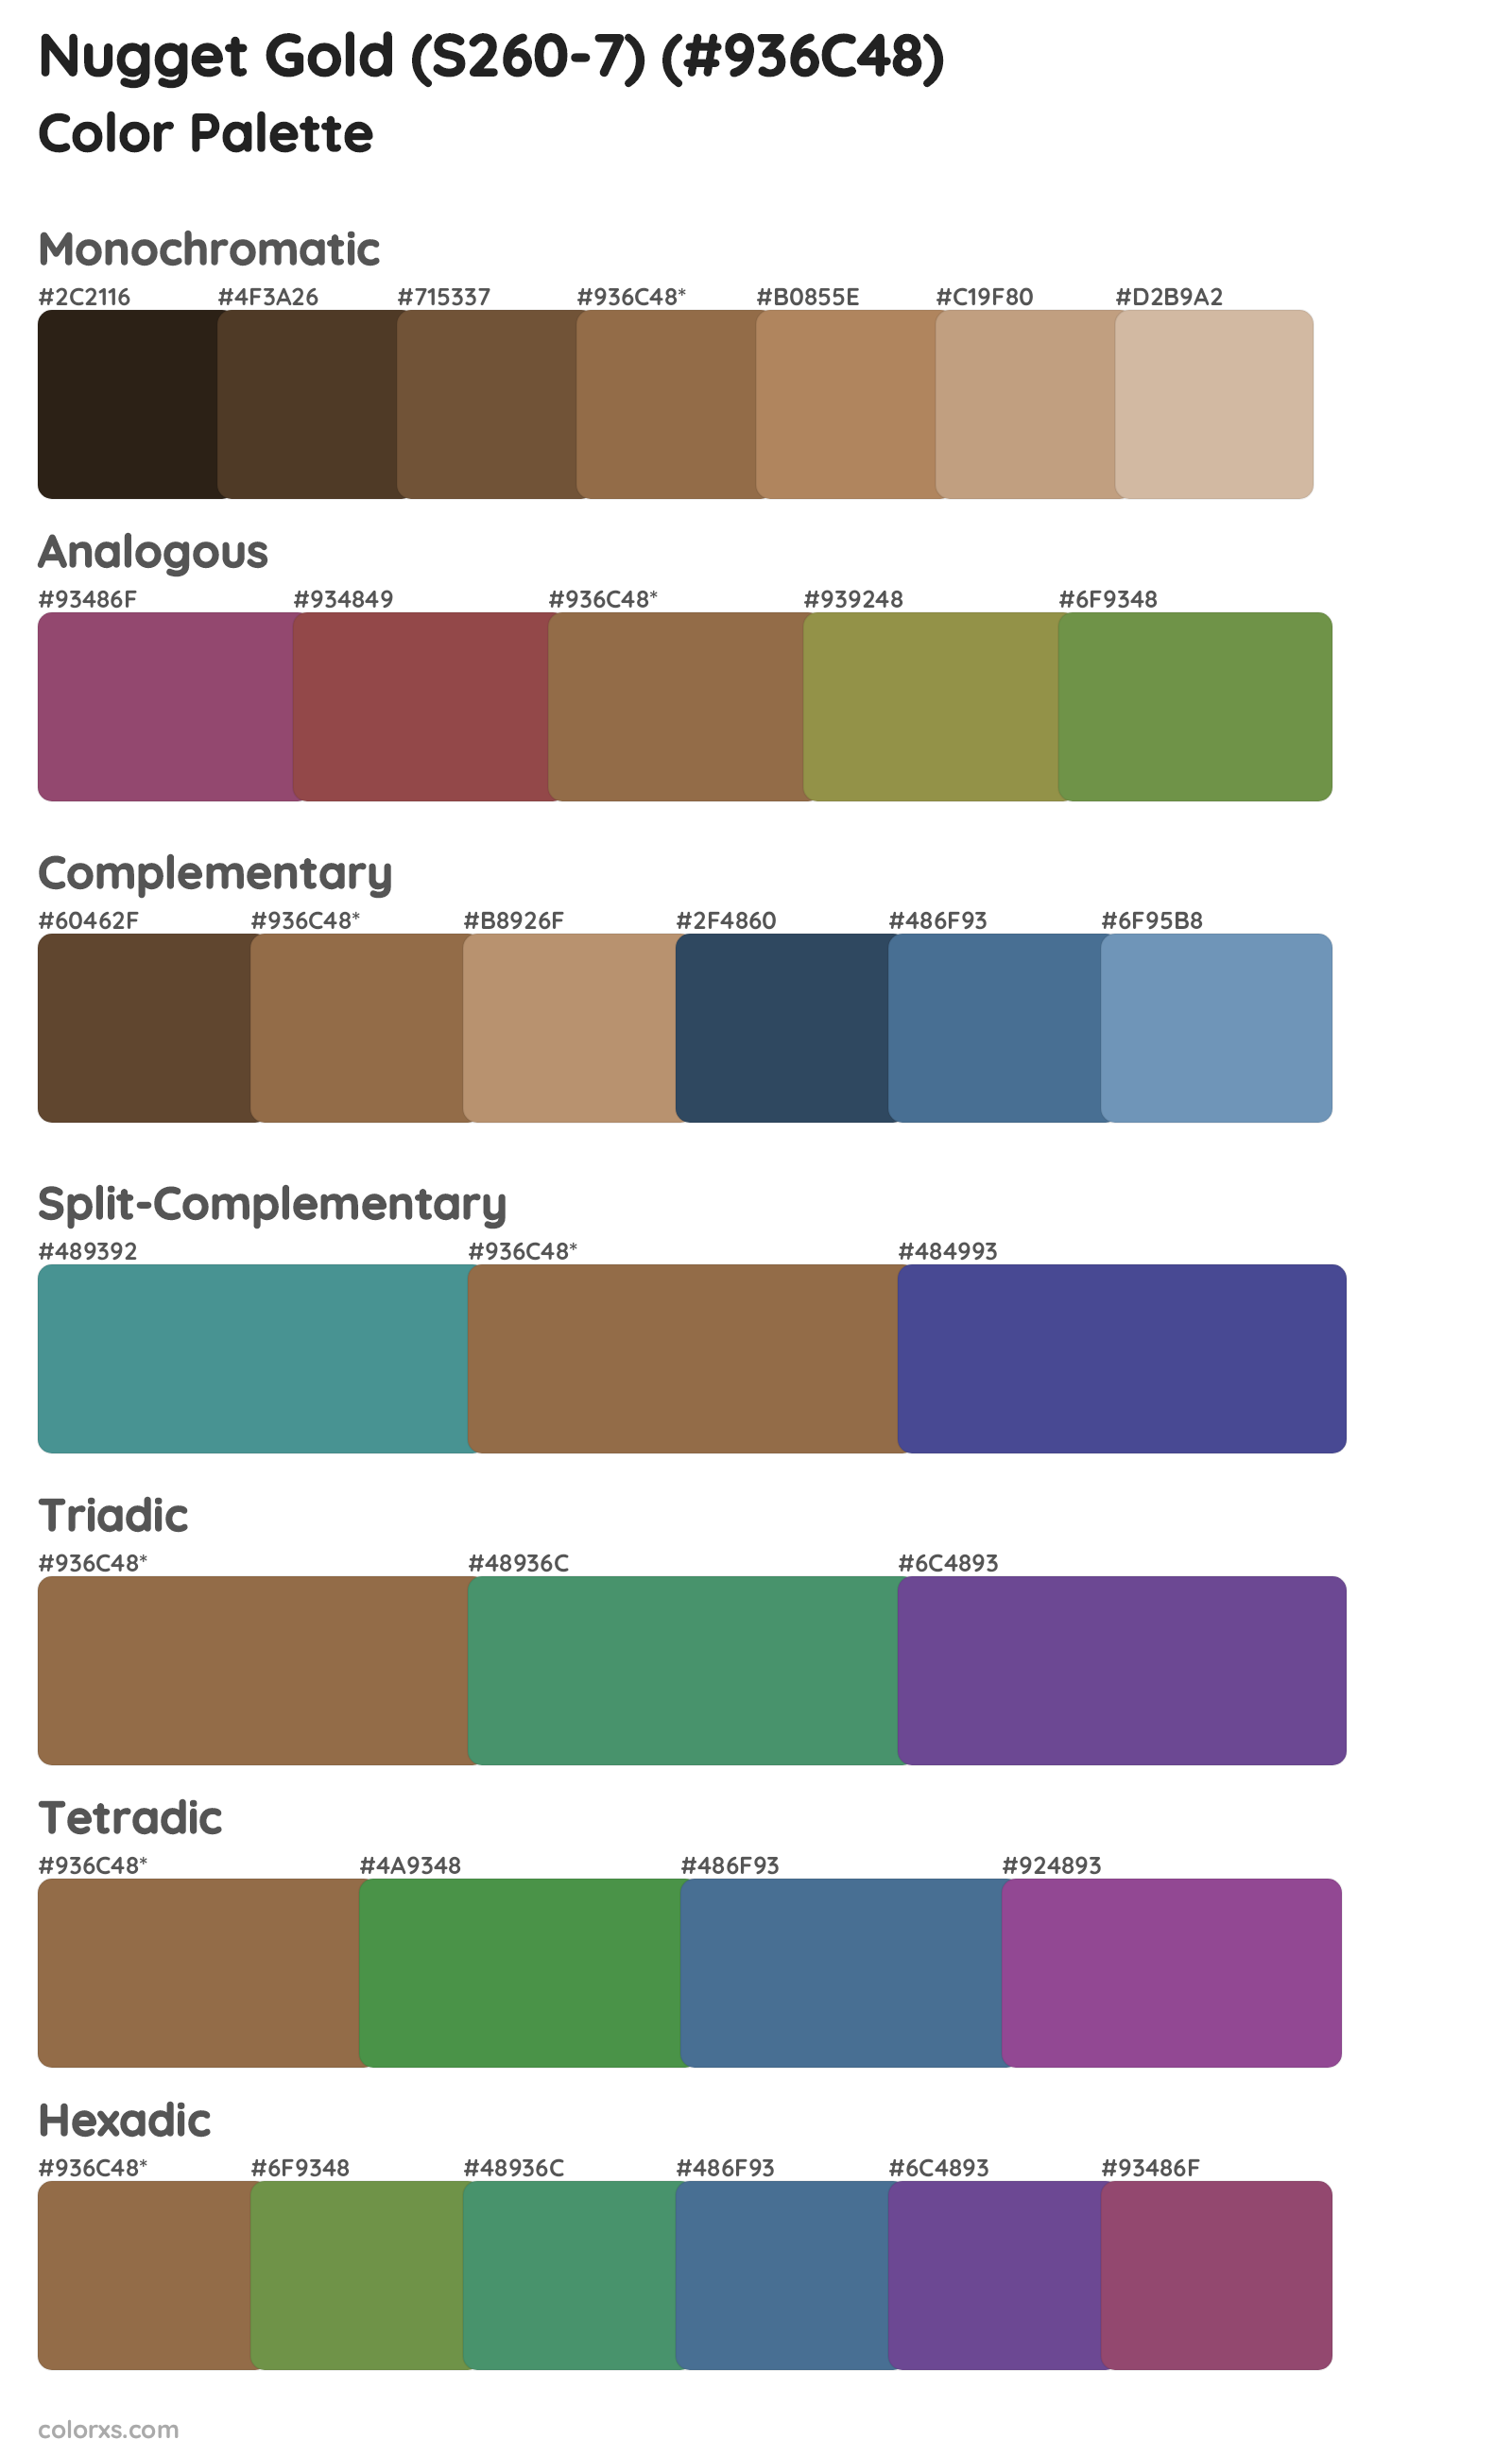 Nugget Gold (S260-7) Color Scheme Palettes